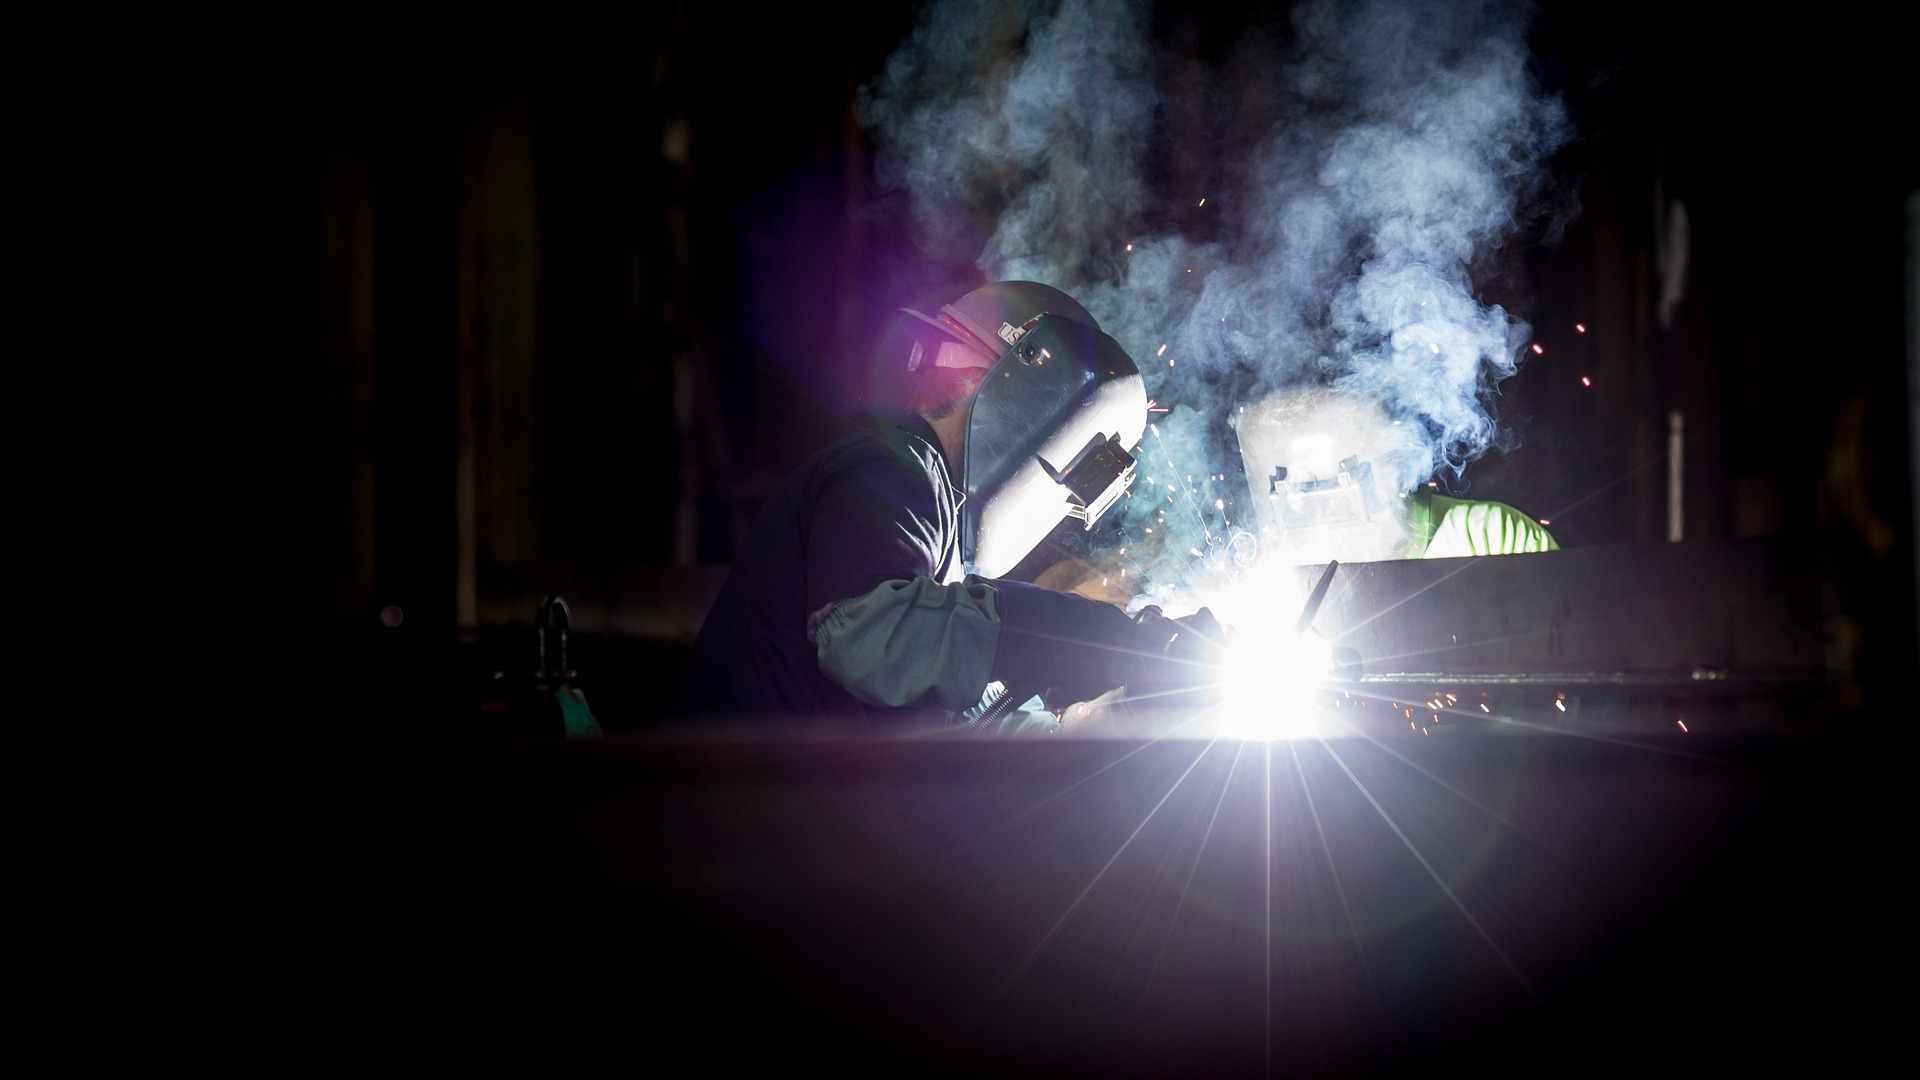 Man welding in a workshop